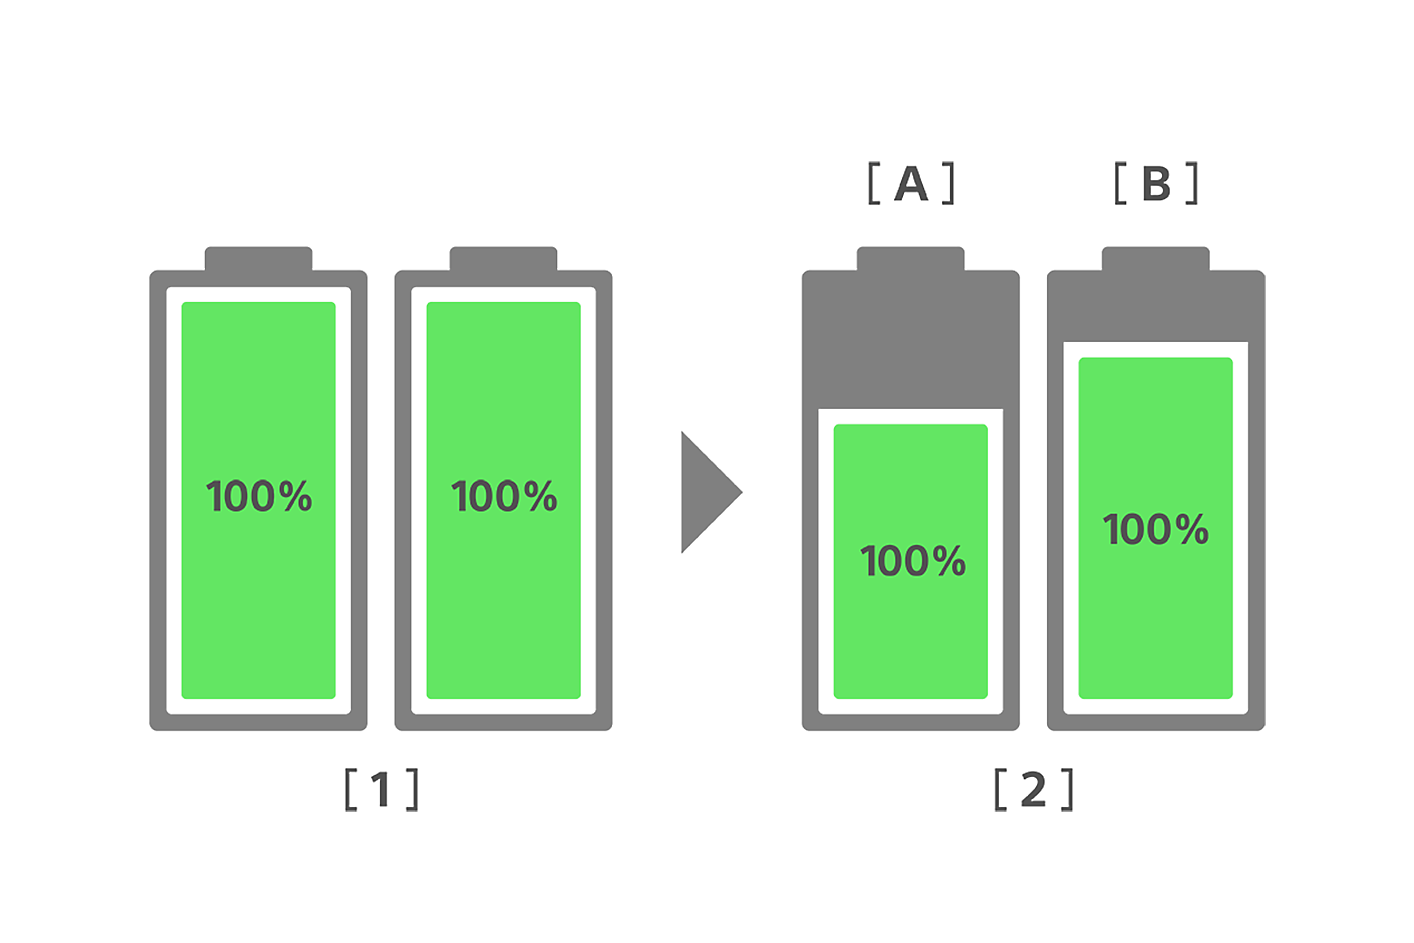 En bild som jämför batterihälsan för ett konventionellt smartphonebatteri och ett nytt Xperia-batteri